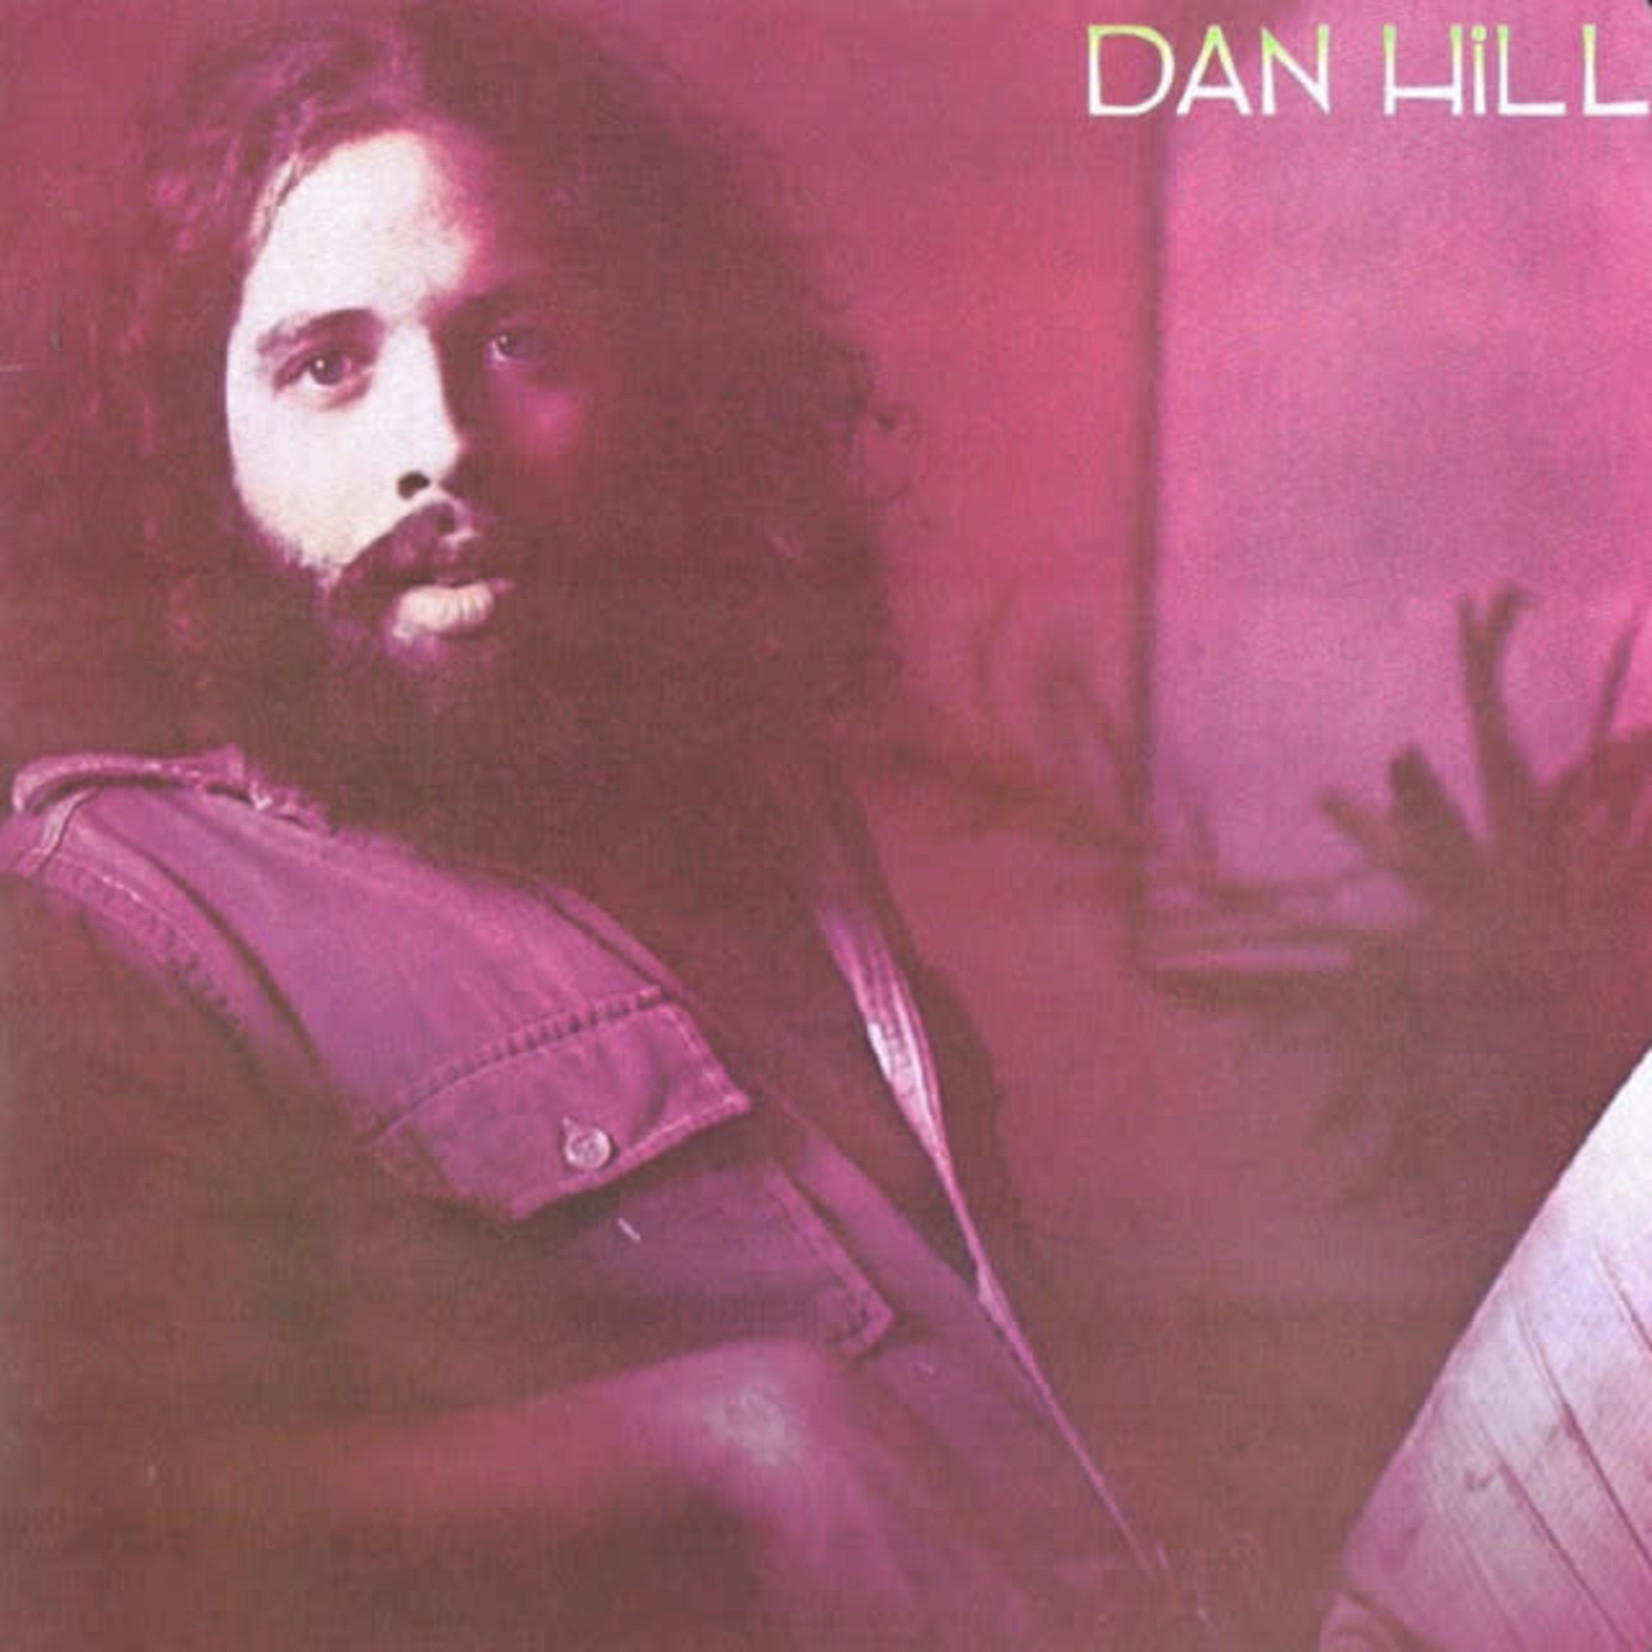 [Vintage] Dan Hill - self-titled